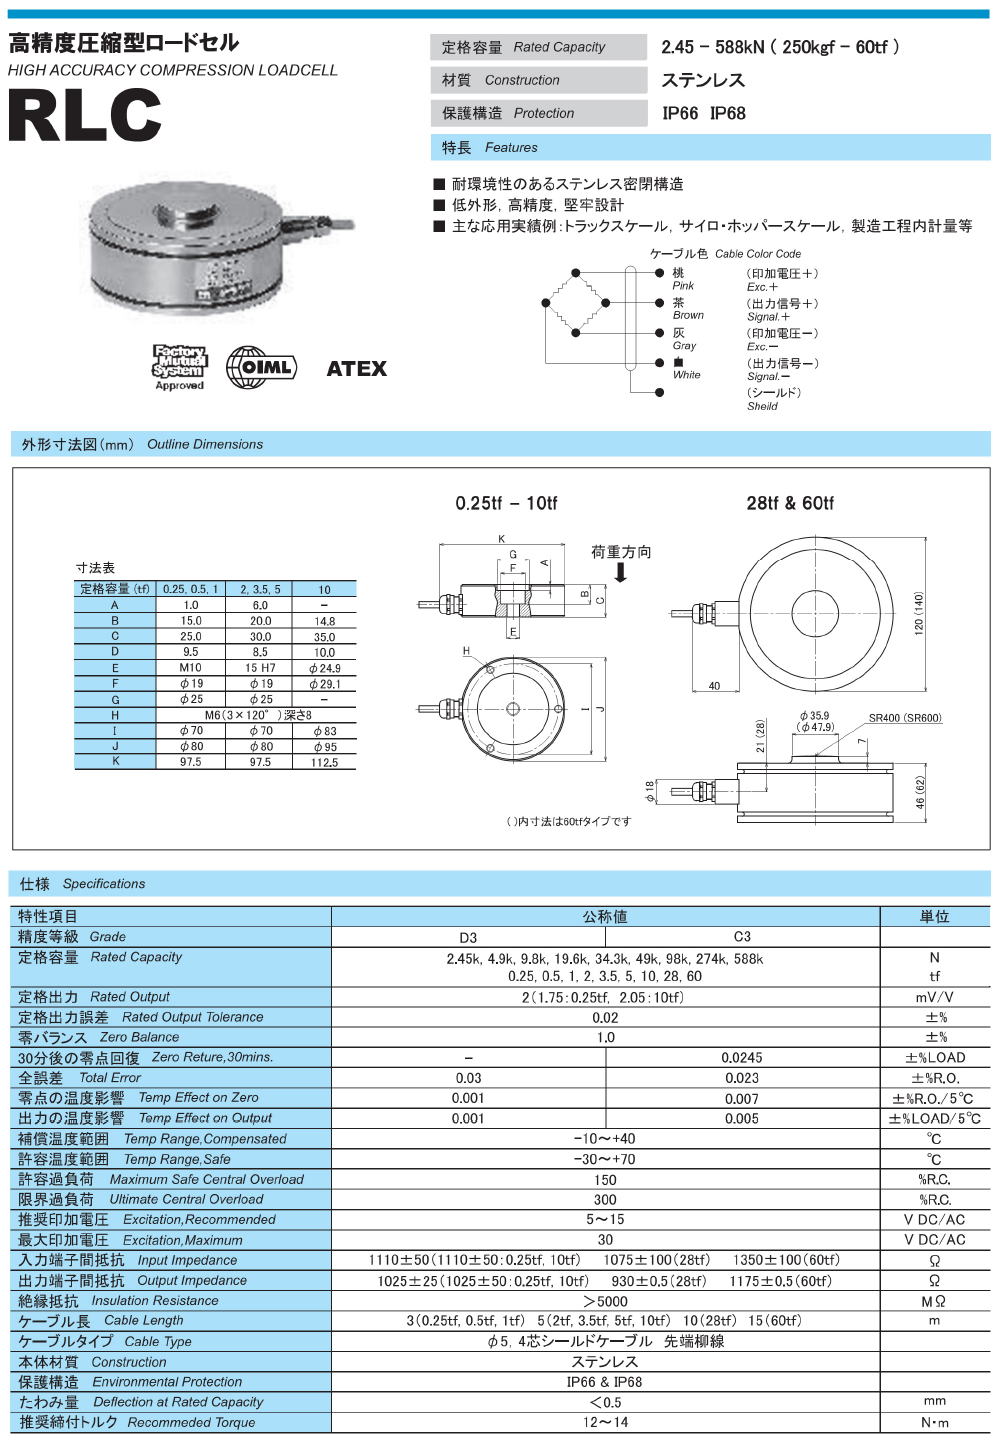 東洋測器 高精度圧縮型ロードセル RLC / RLC-SM